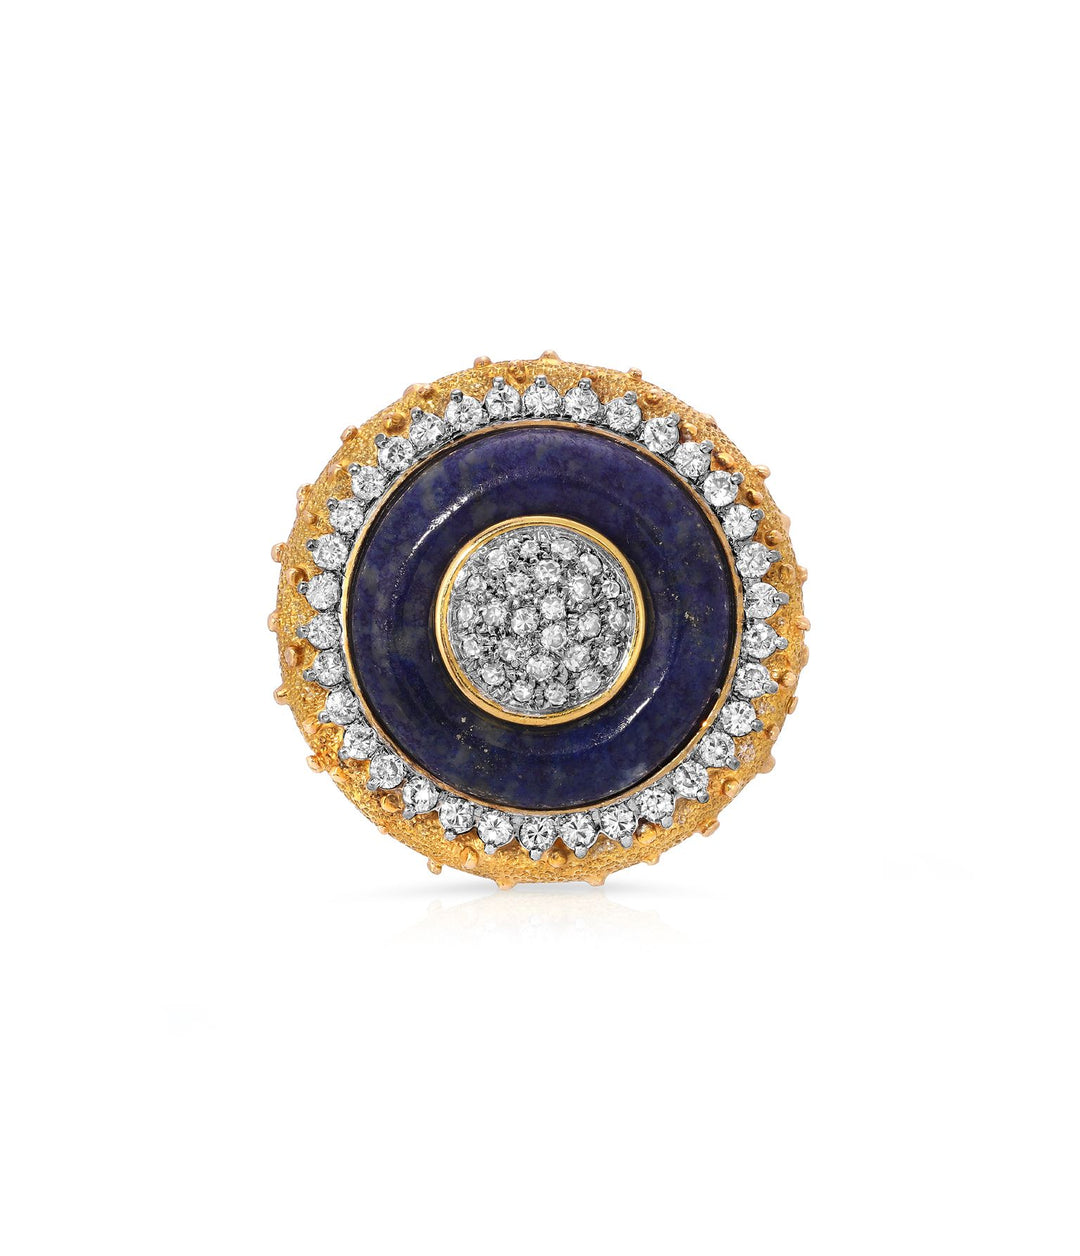 Lapis Lazuli & Diamond Cocktail Ring in 14K Gold